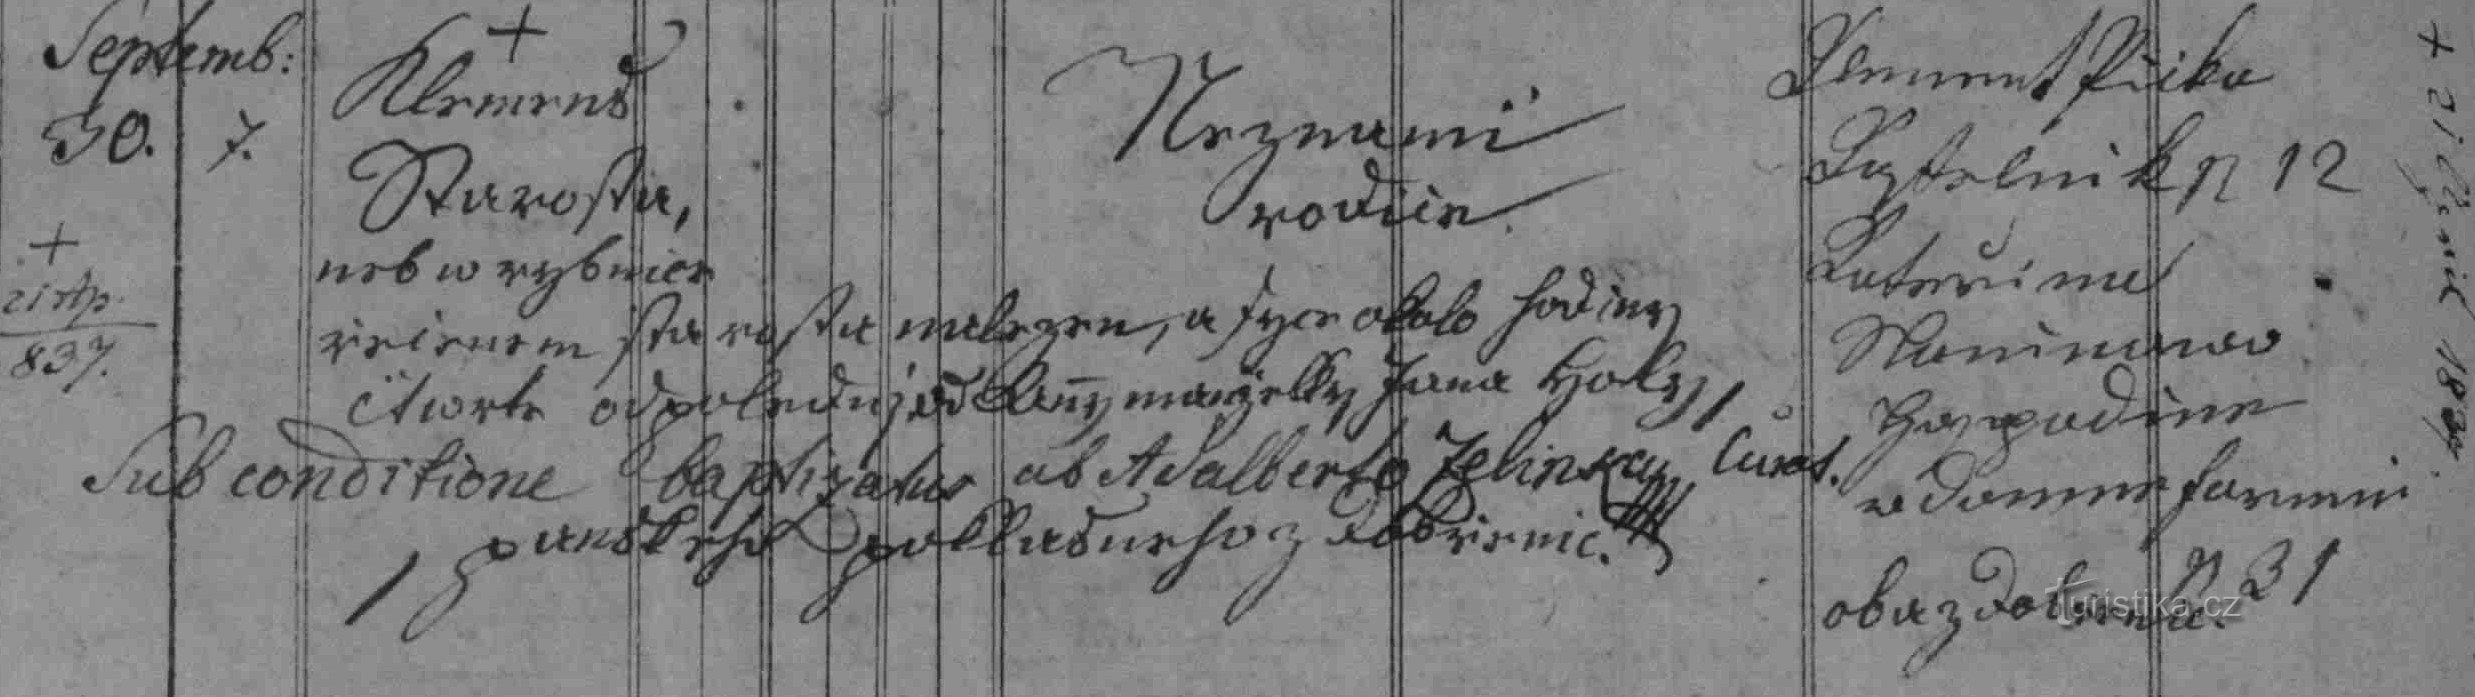 Dobření register over dåben af ​​Klemens Starosta fra 1836